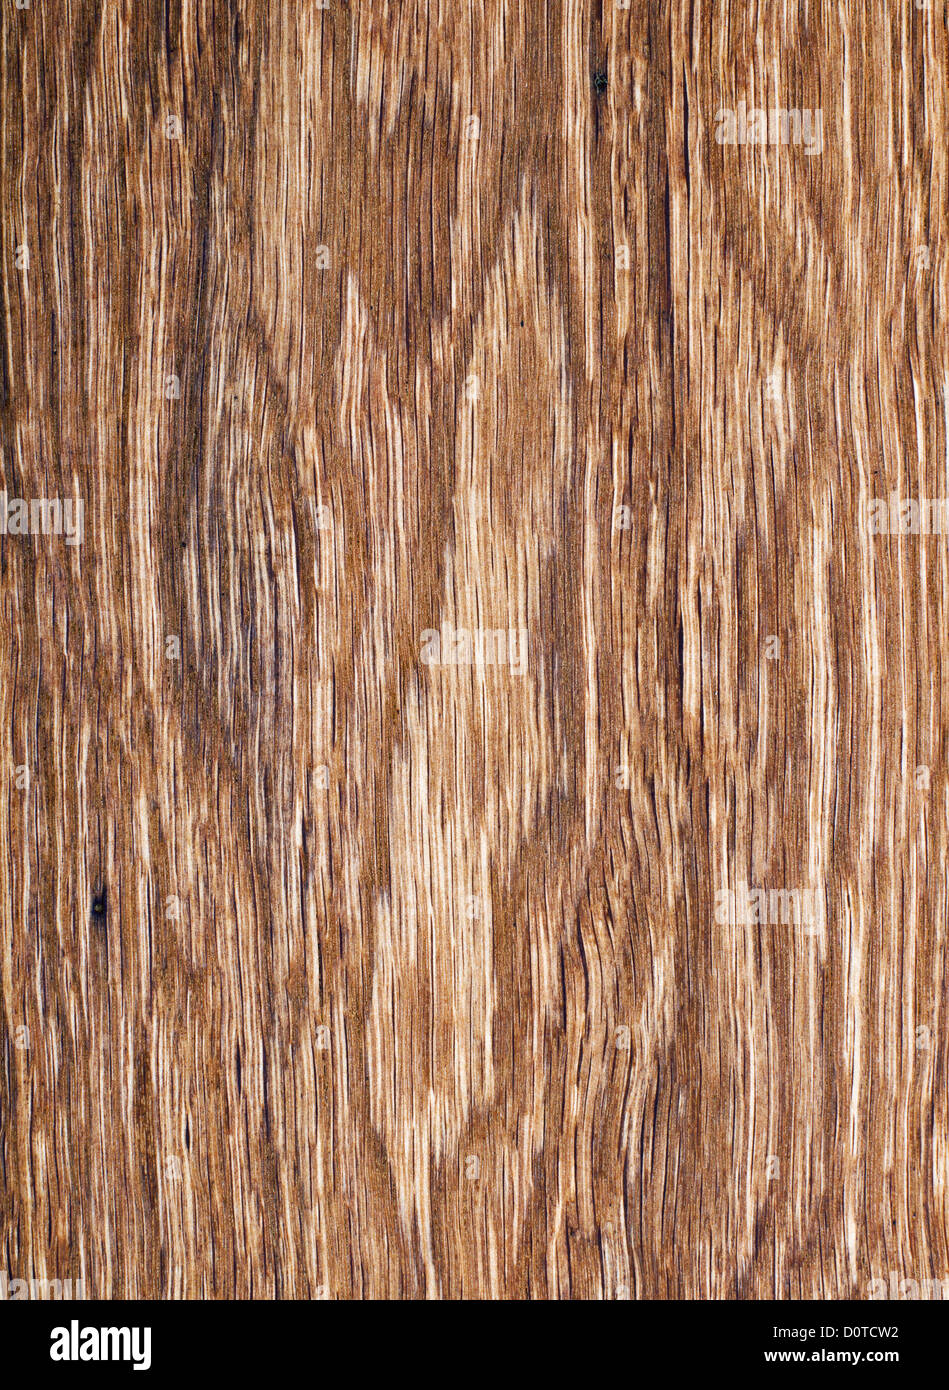 Texture di legno. vecchia quercia in close up Foto Stock